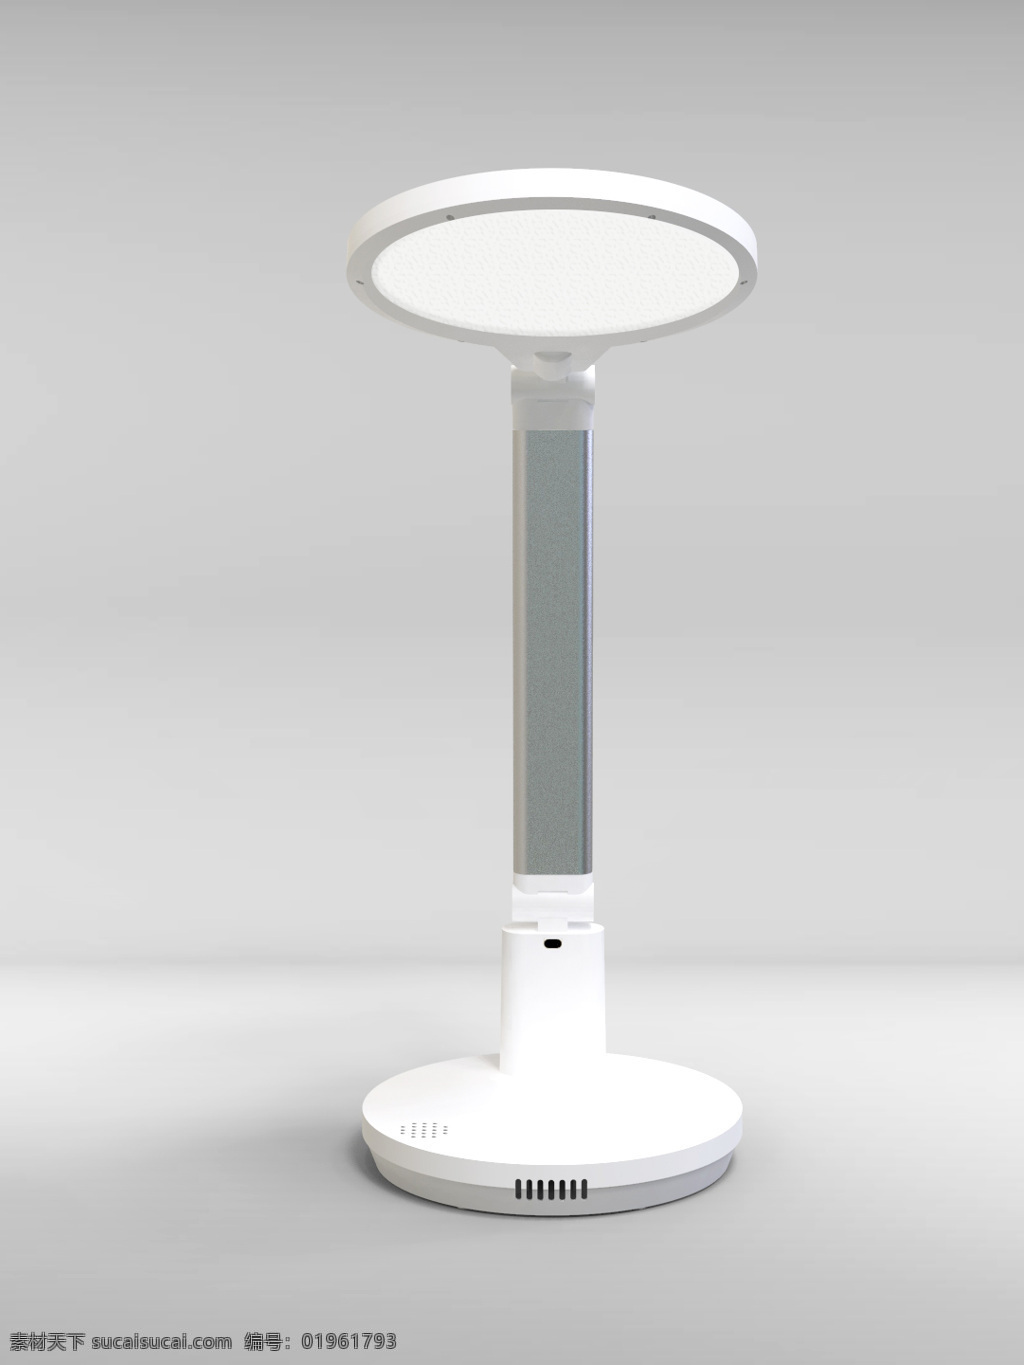 3d 台灯 模型 渲染 图 产品 3d设计 展示模型